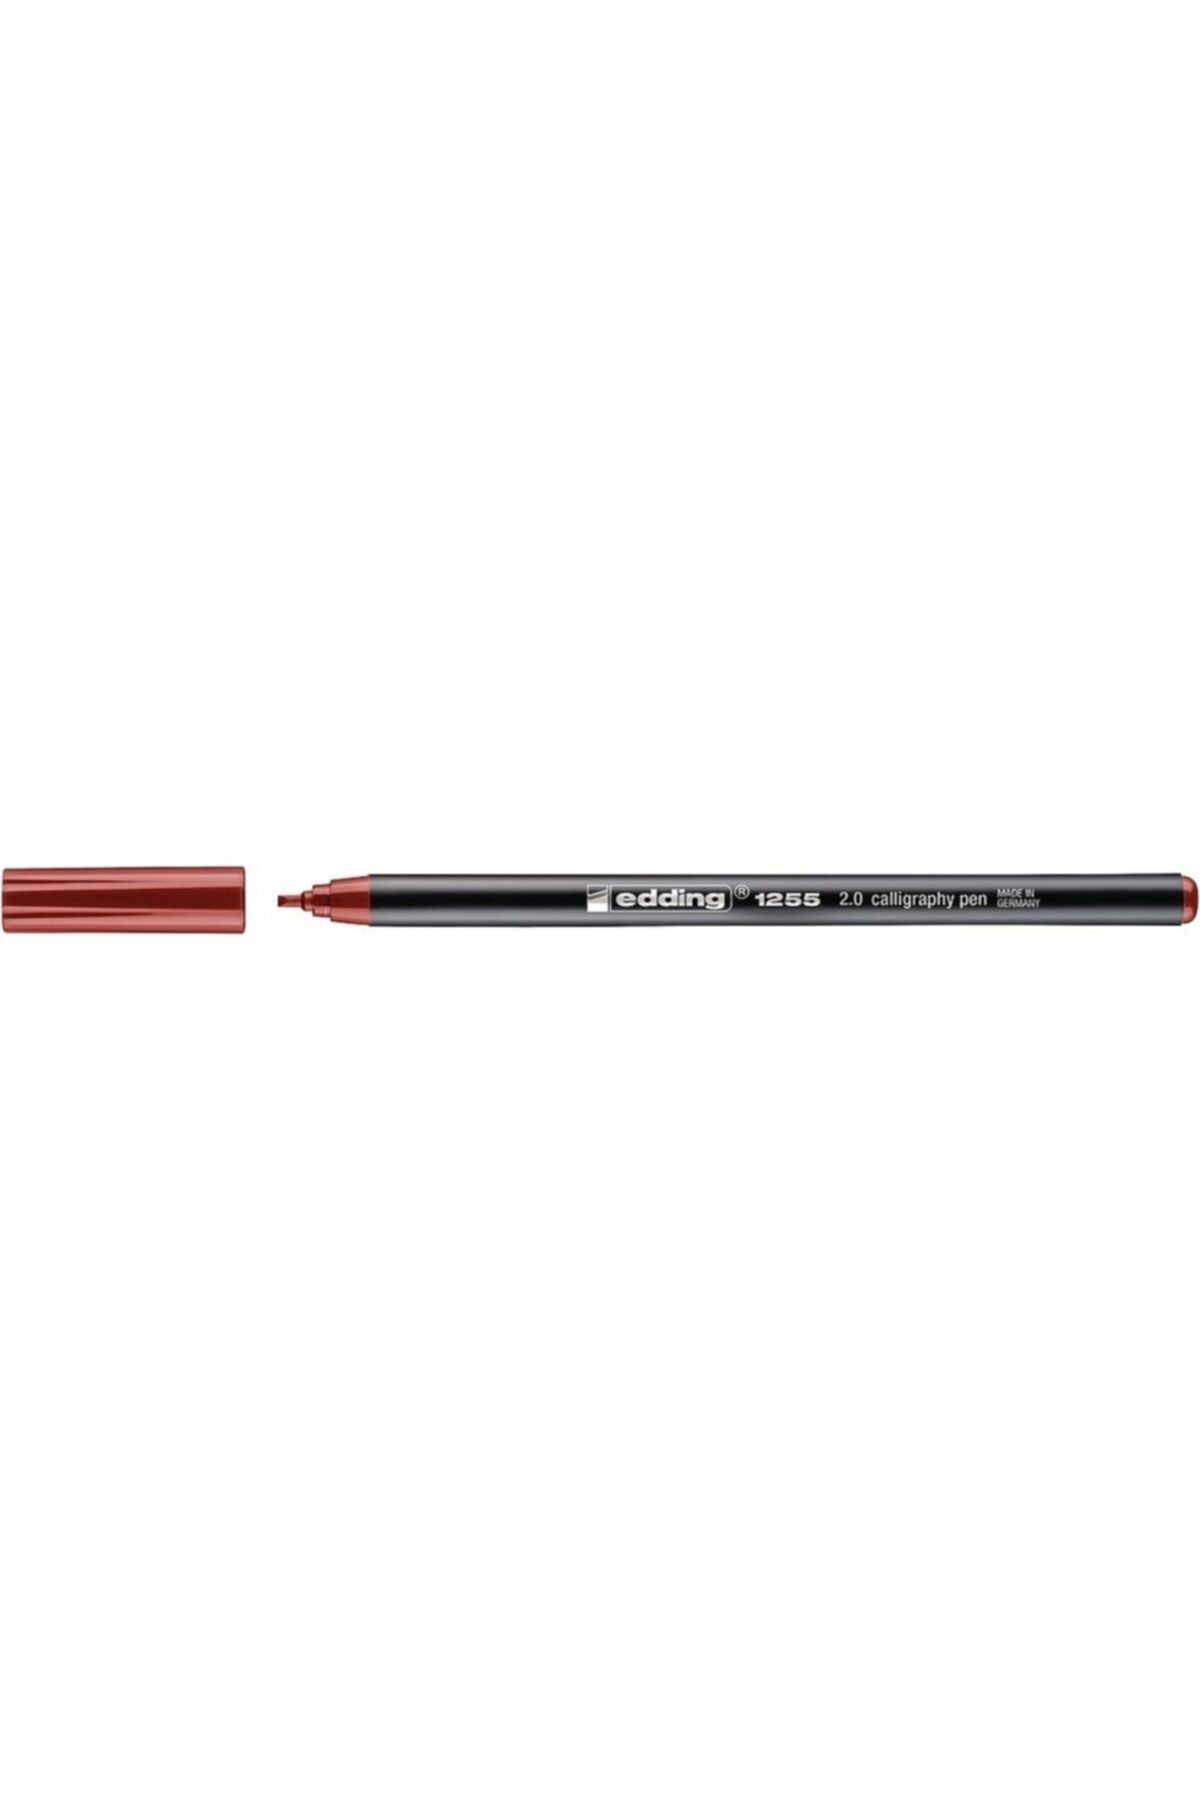 Edding Eddıng E-1255 Çelik 2,0 Mm Grafik Kalemi Kırmızı